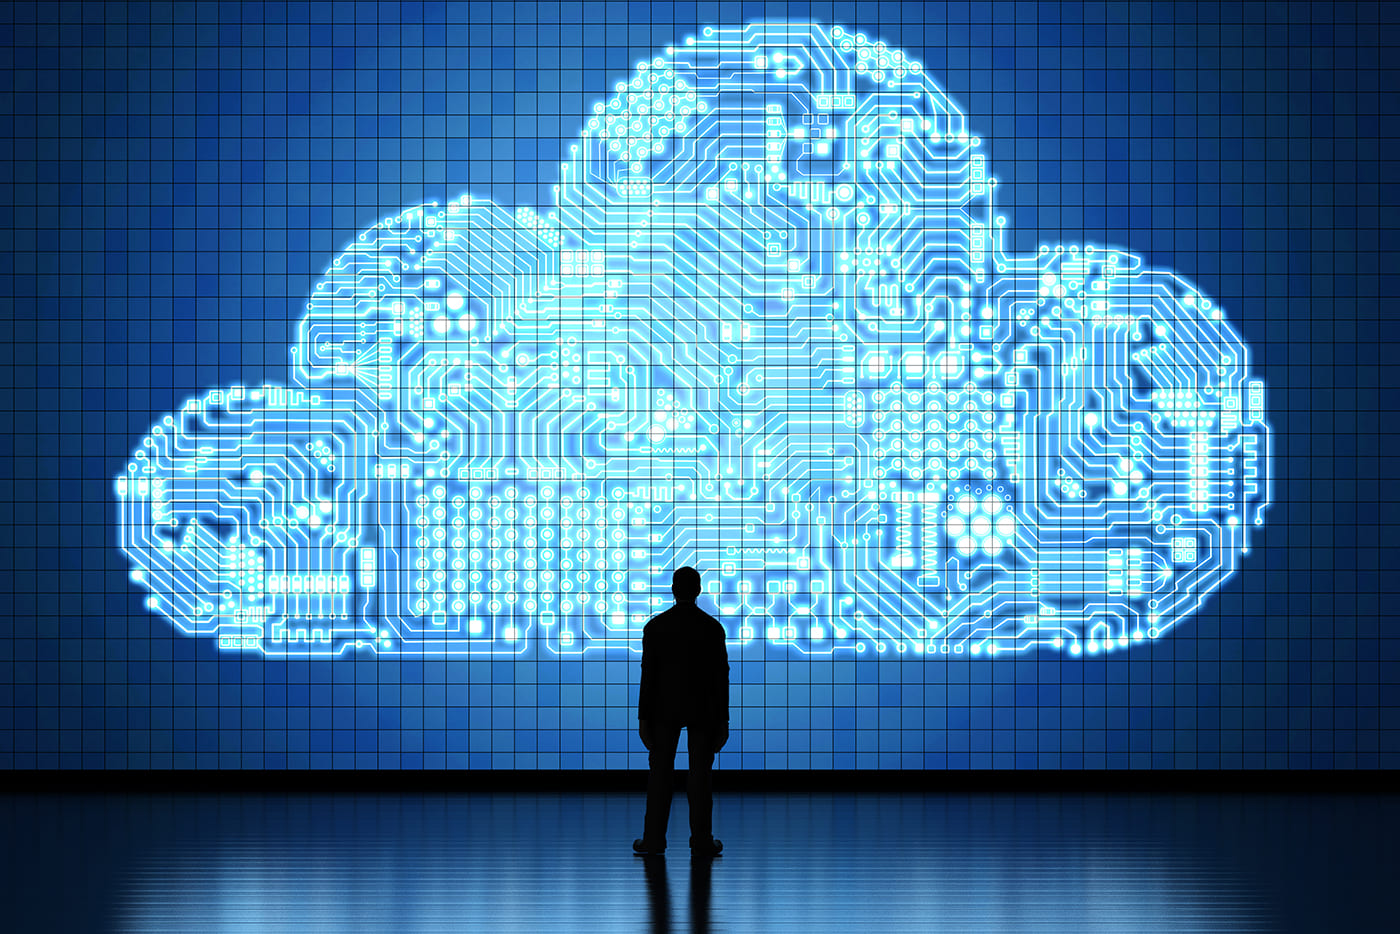 What’s Next after Cloud Computing? | Bernard Marr